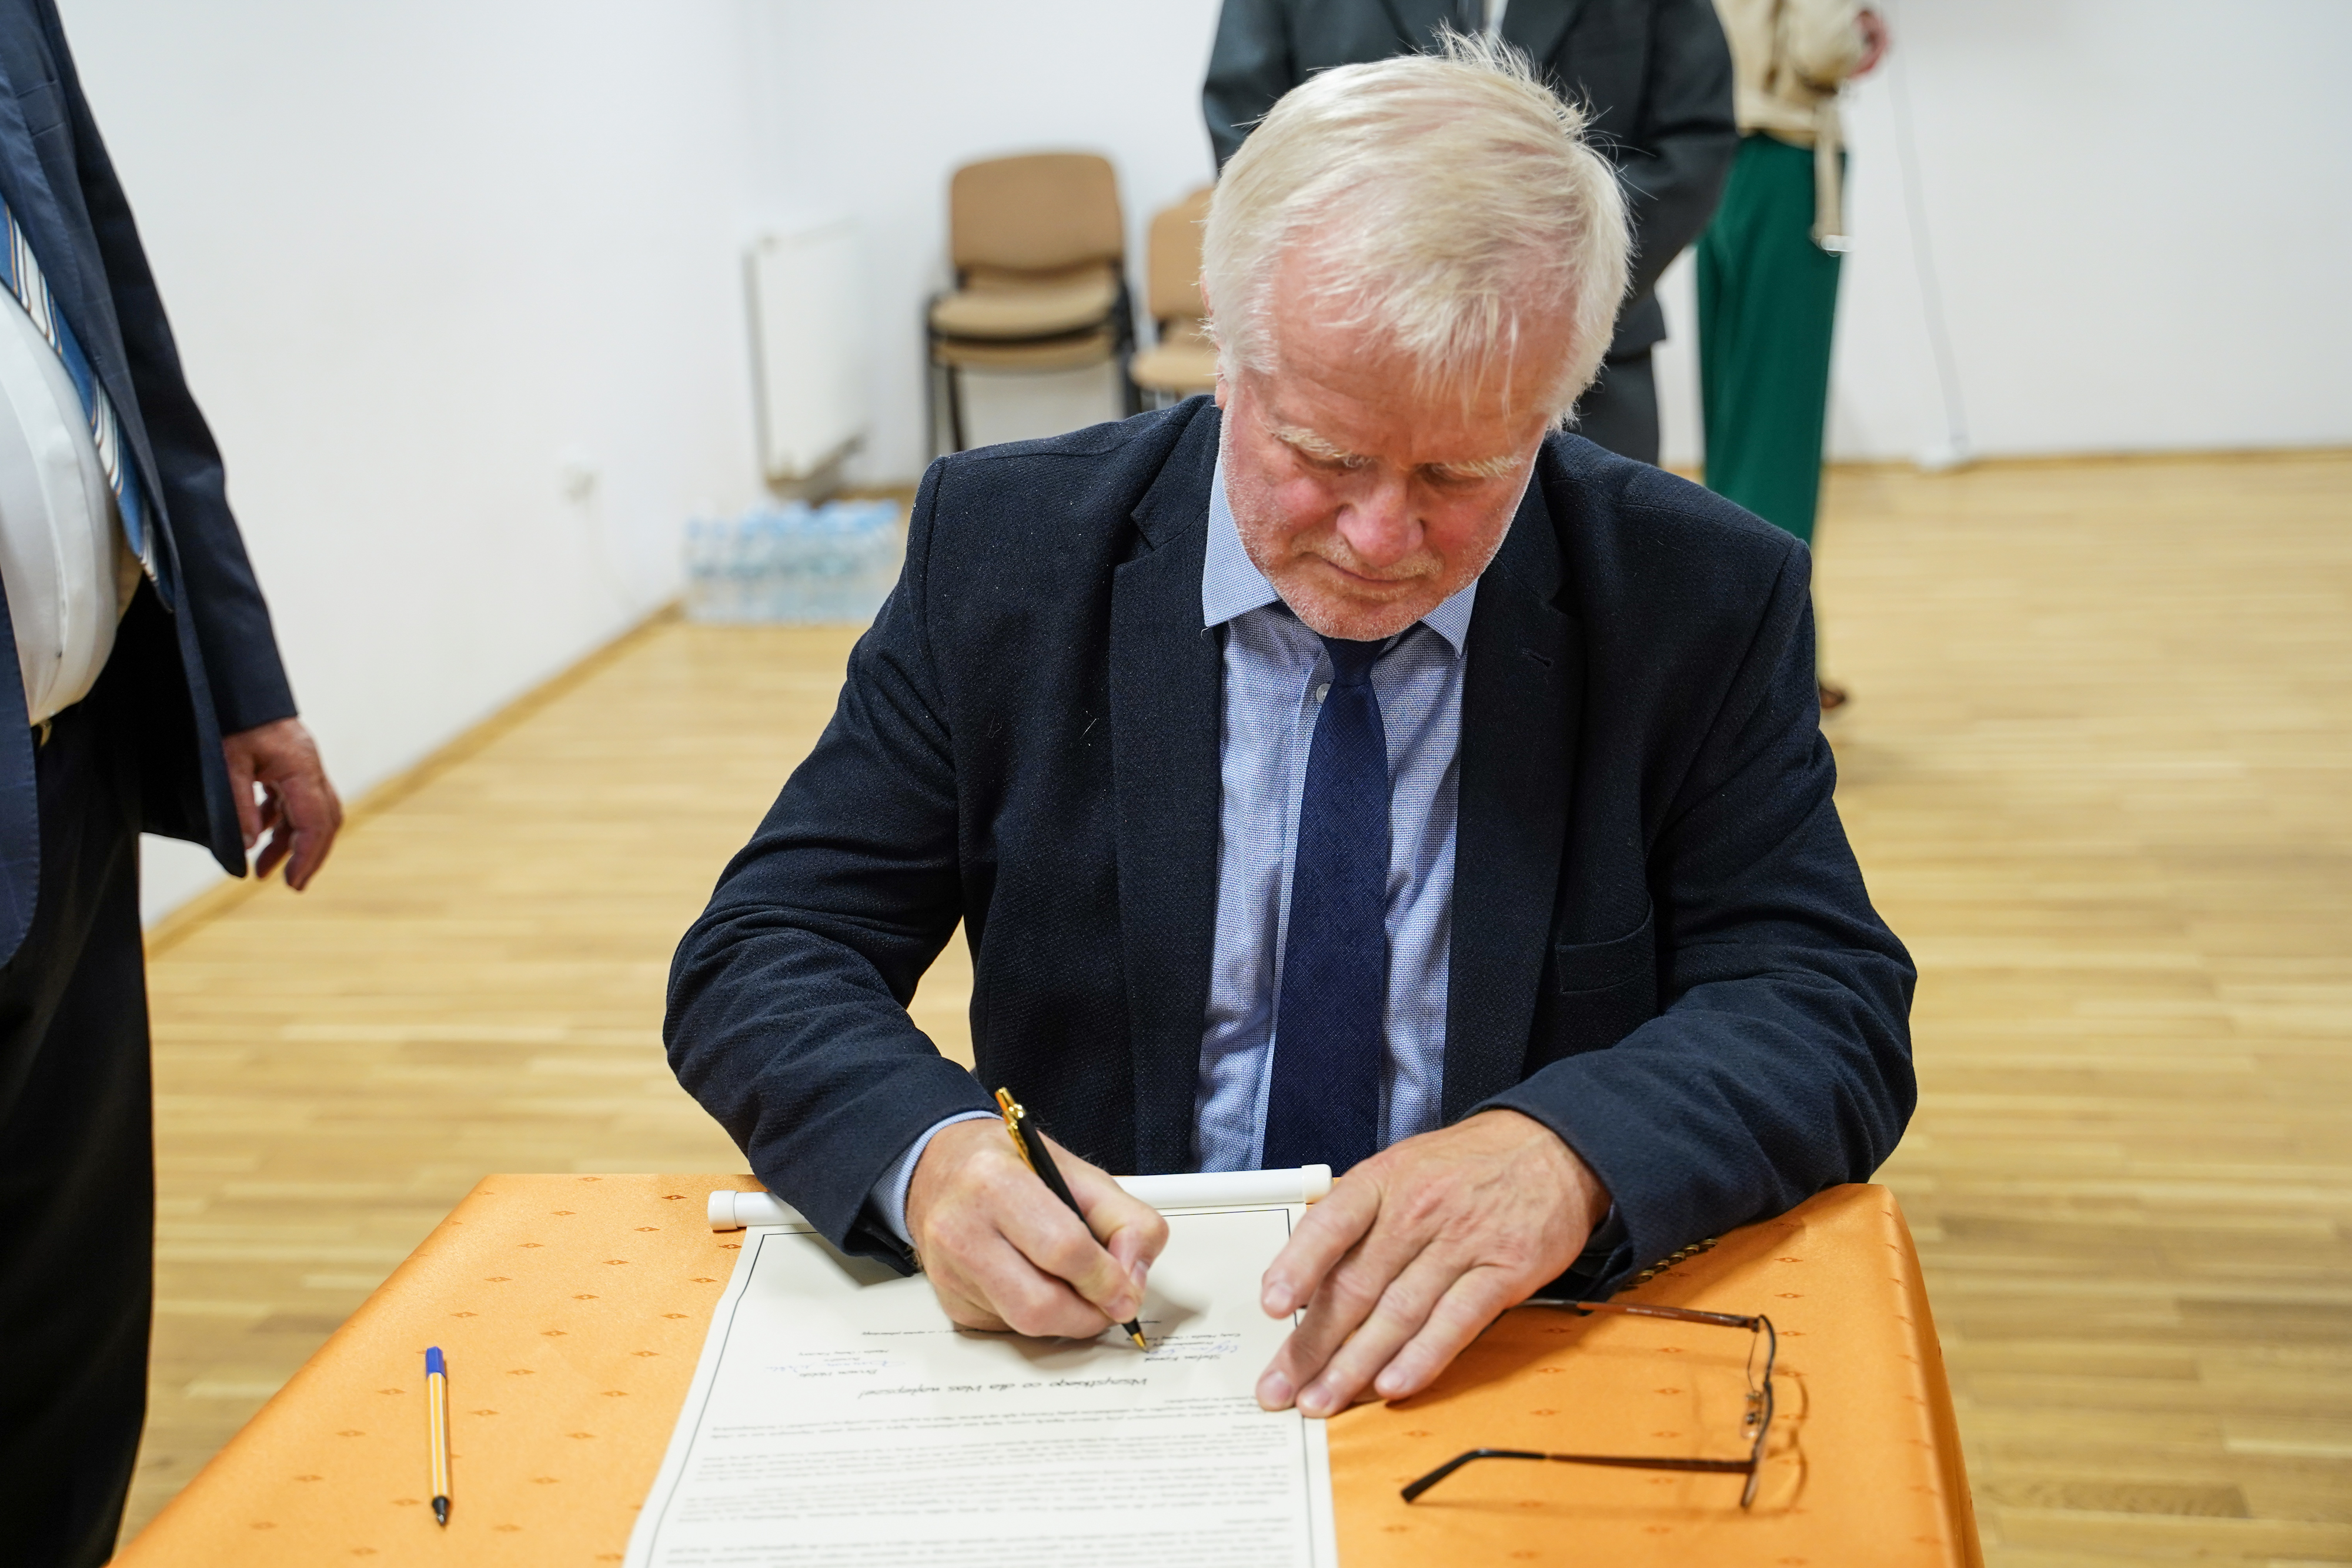 Na zdjęciu widać podpisującego się na liście Przewodniczącego Rady Miasta i Gminy - Pan Stefan Kowal.